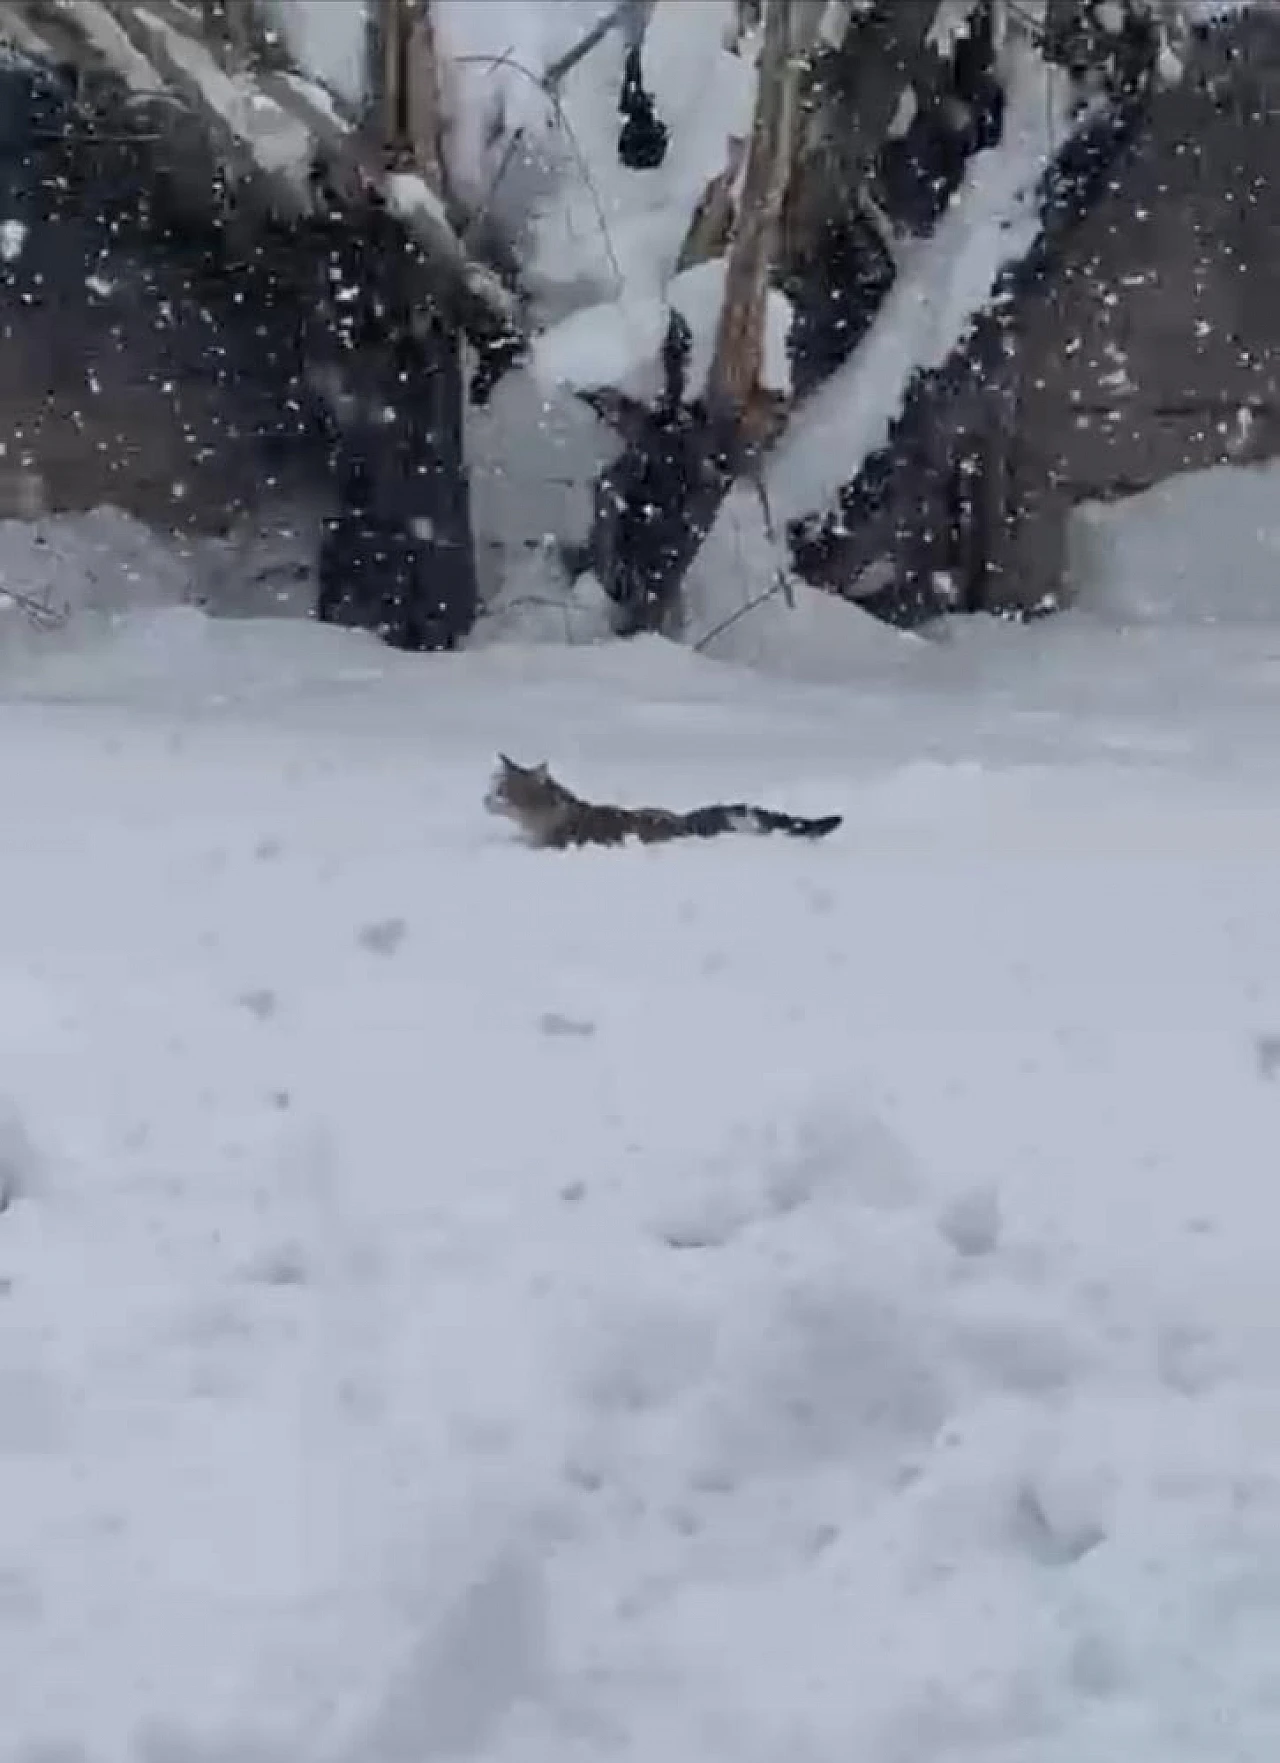 Kedinin karla zorlu mücadelesi